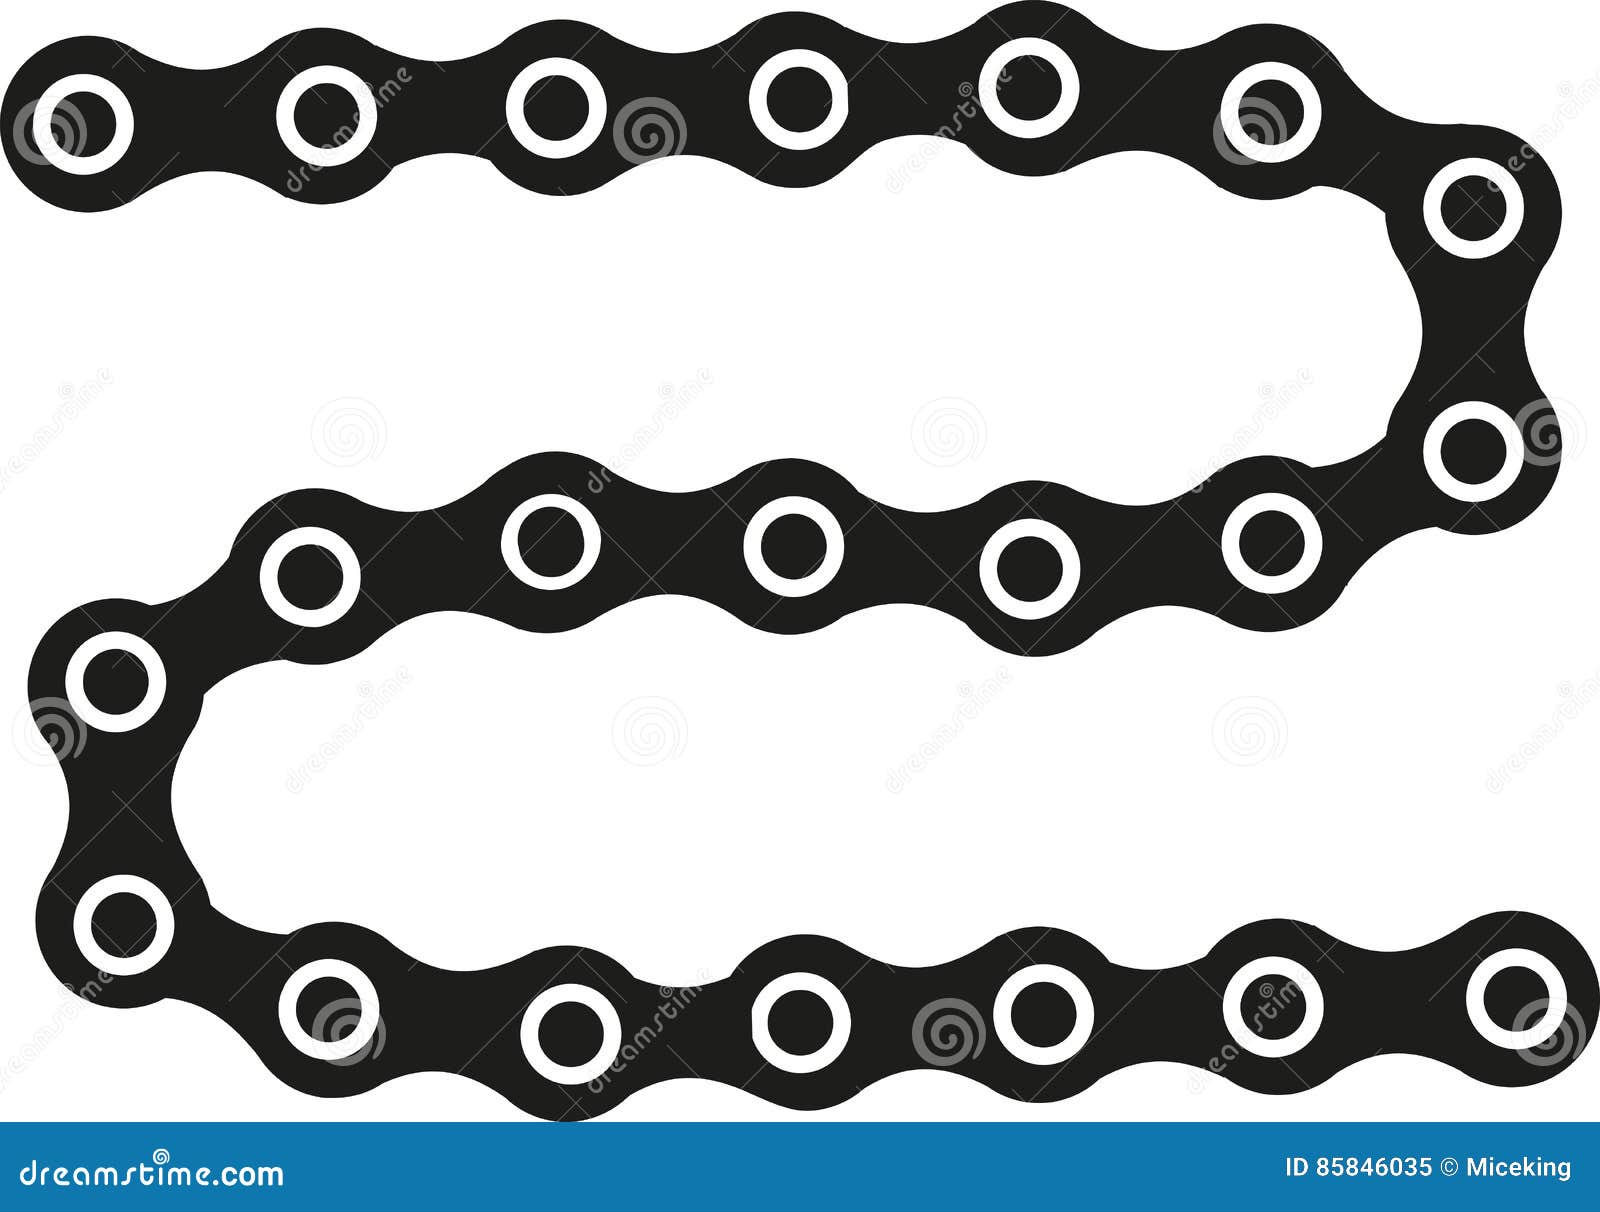 Bike chain stock vector. Illustration of silhouette, pictogram - 85846035